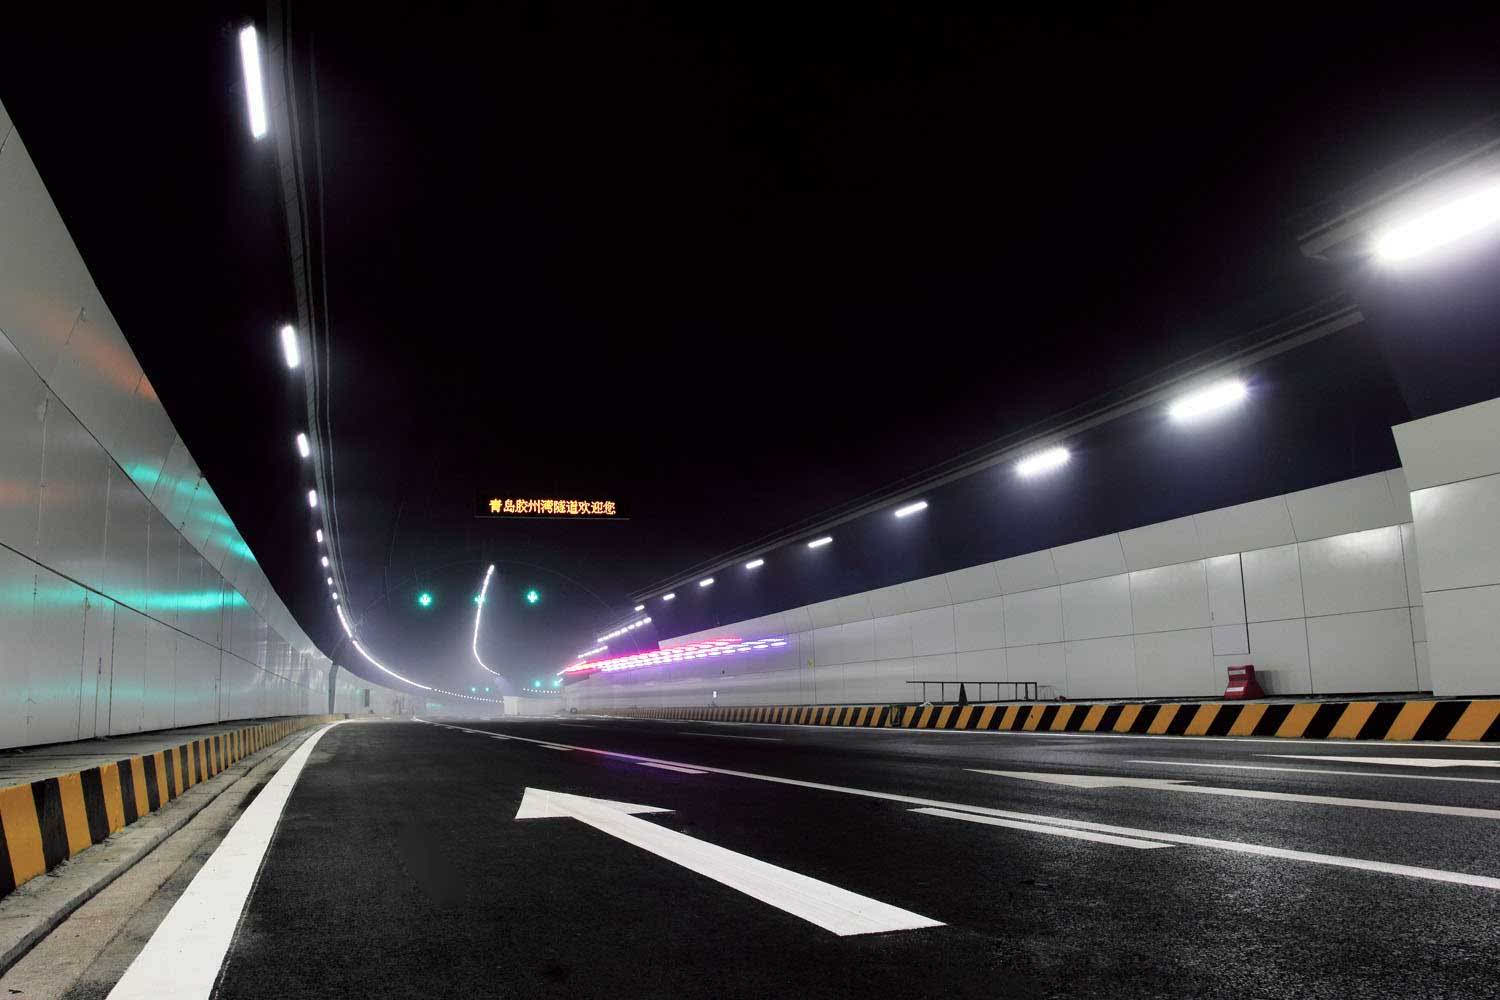 胶州湾隧道8月起下调通行费 最低8元/车次